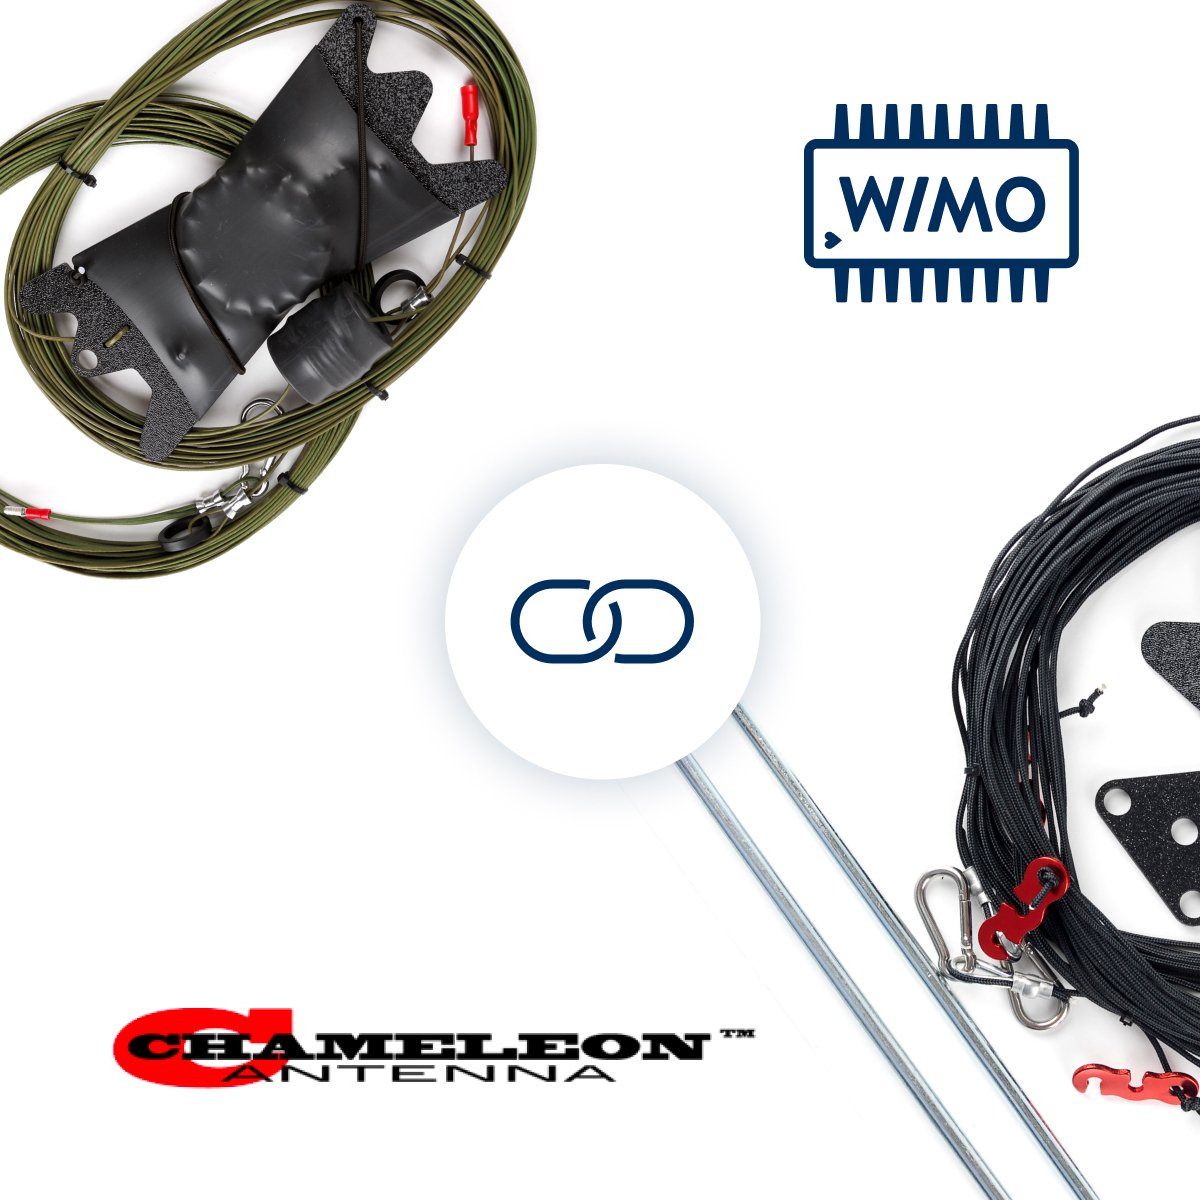 WiMo übernimmt General-Distribution für Chameleon Antennas in Europa